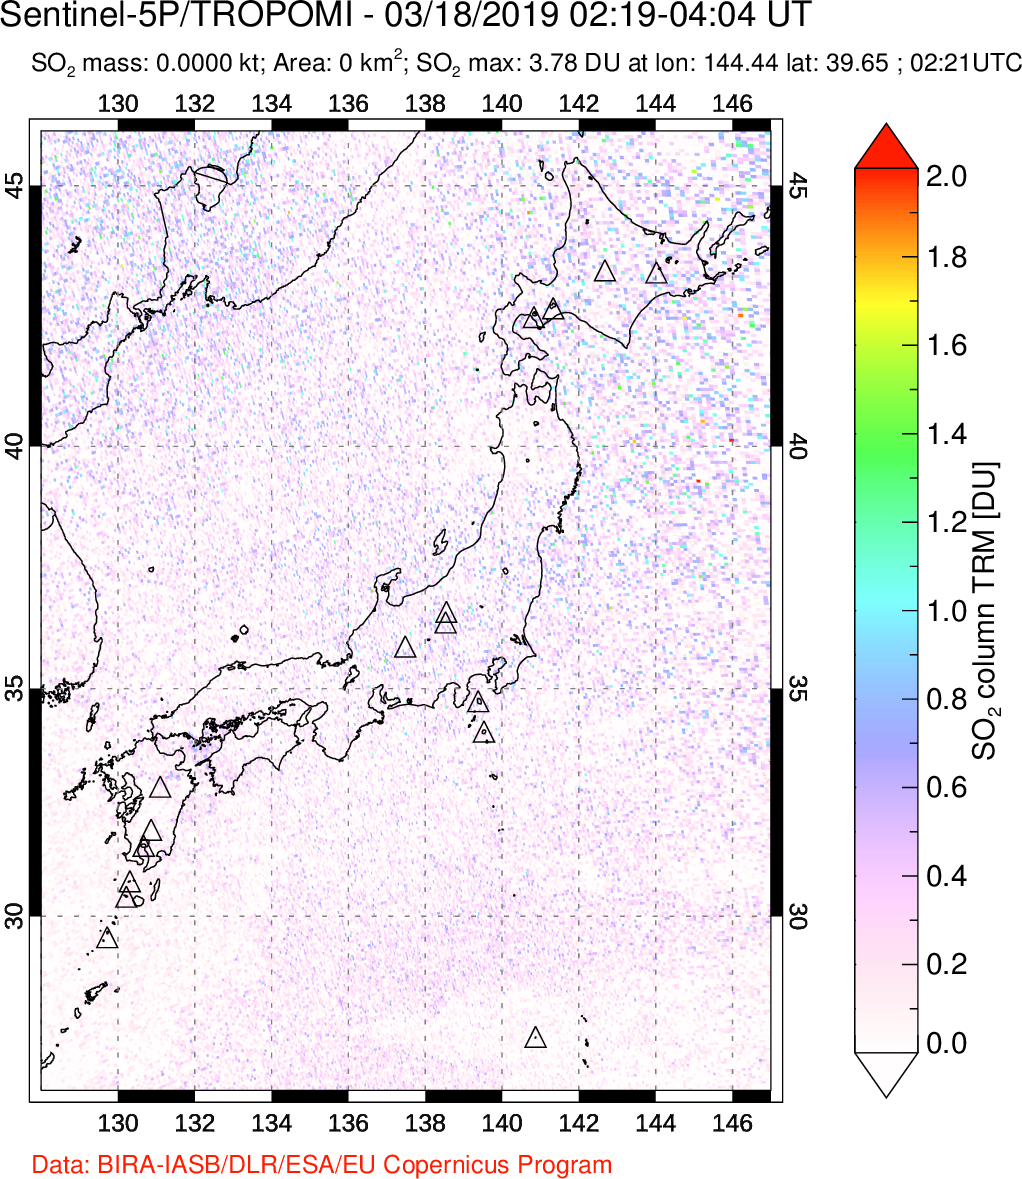 A sulfur dioxide image over Japan on Mar 18, 2019.